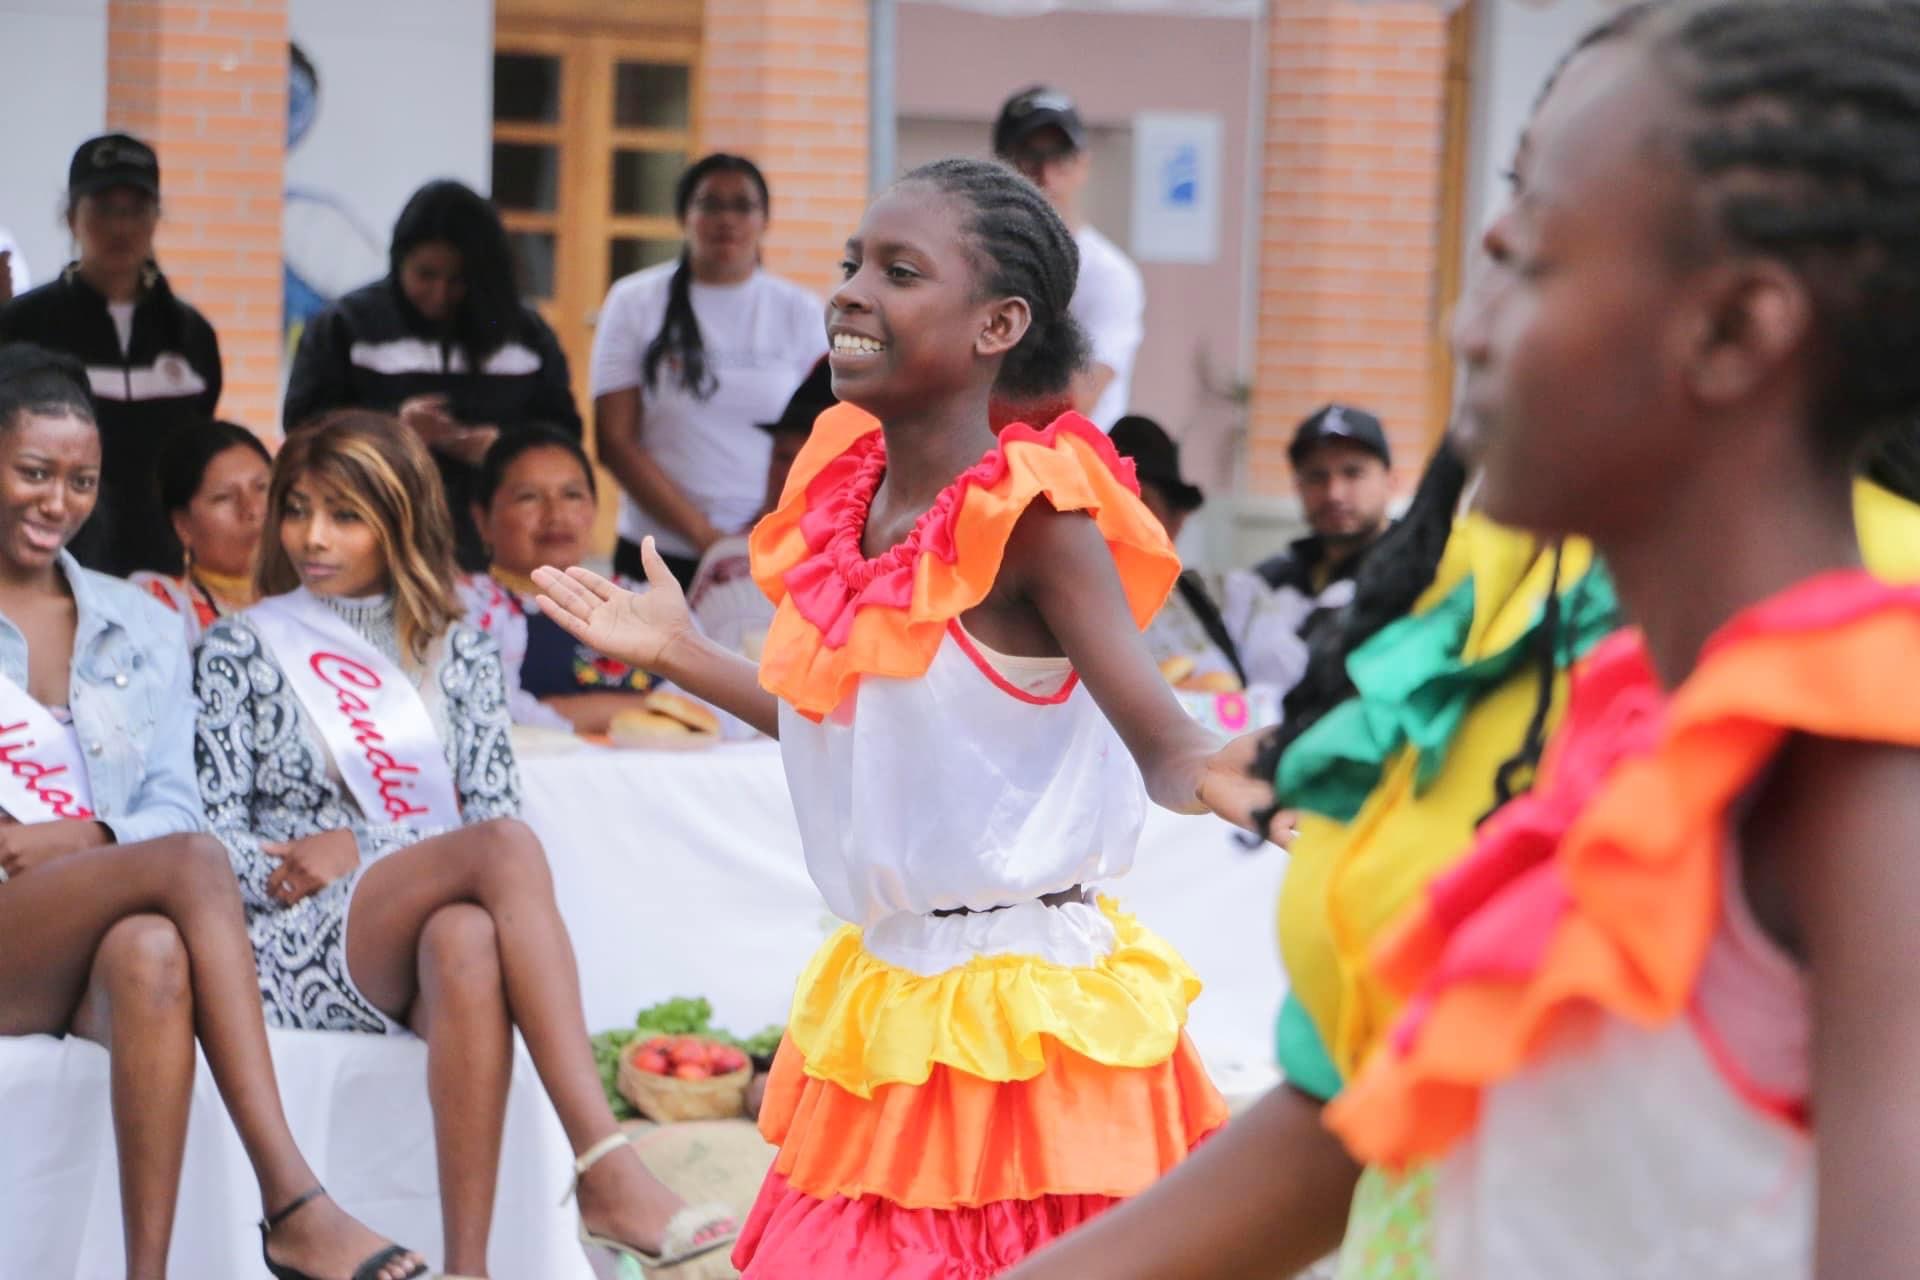 Cultura. Música, gastronomía, danza, ferias y mucho habrá este feriado en las parroquias urbanas y rurales de Ibarra.